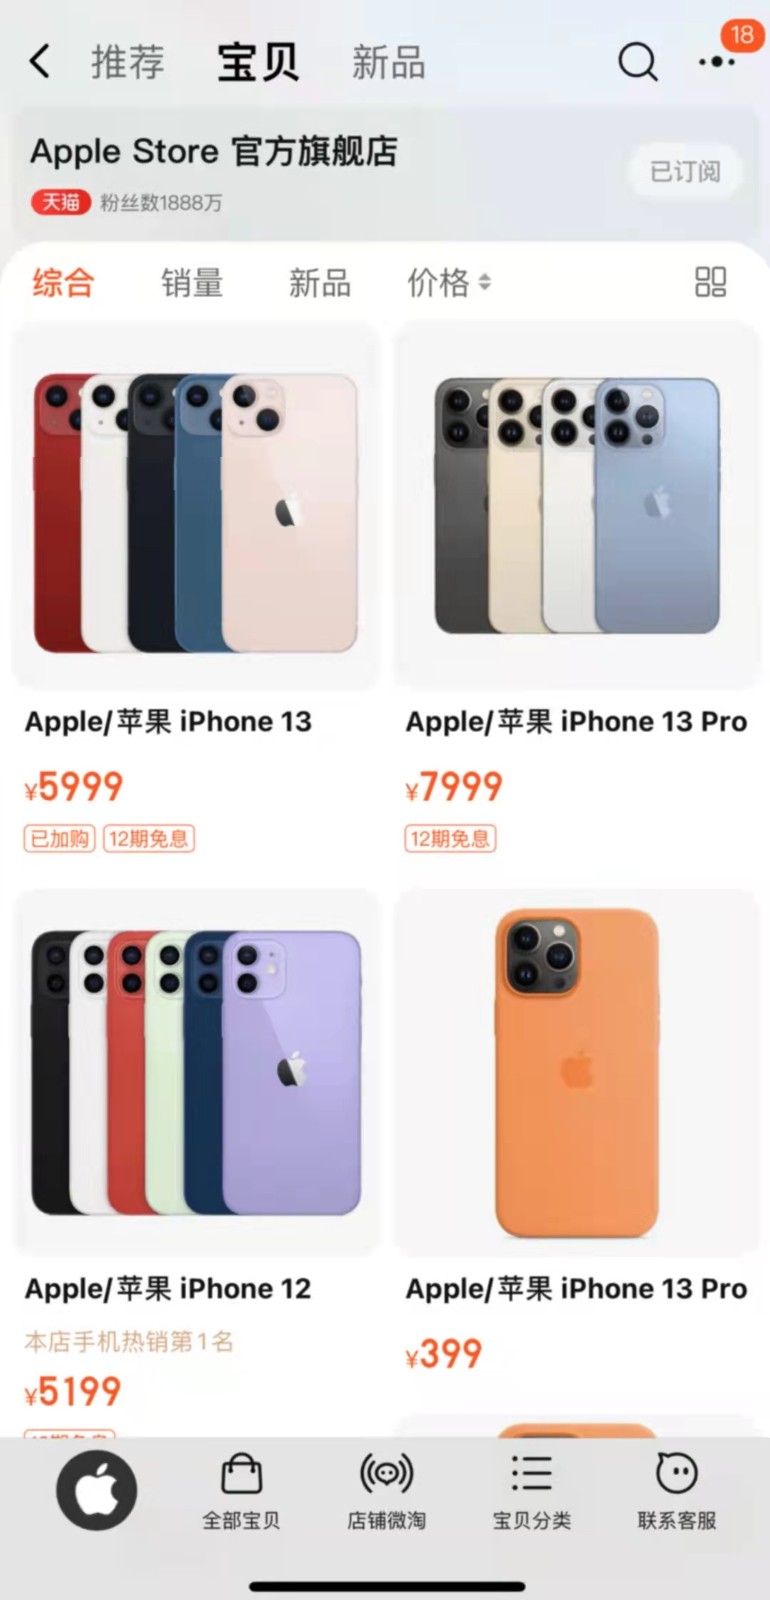 Iphone 13粉色款爆红天猫3分钟售罄 苹果忙补货 3dm单机